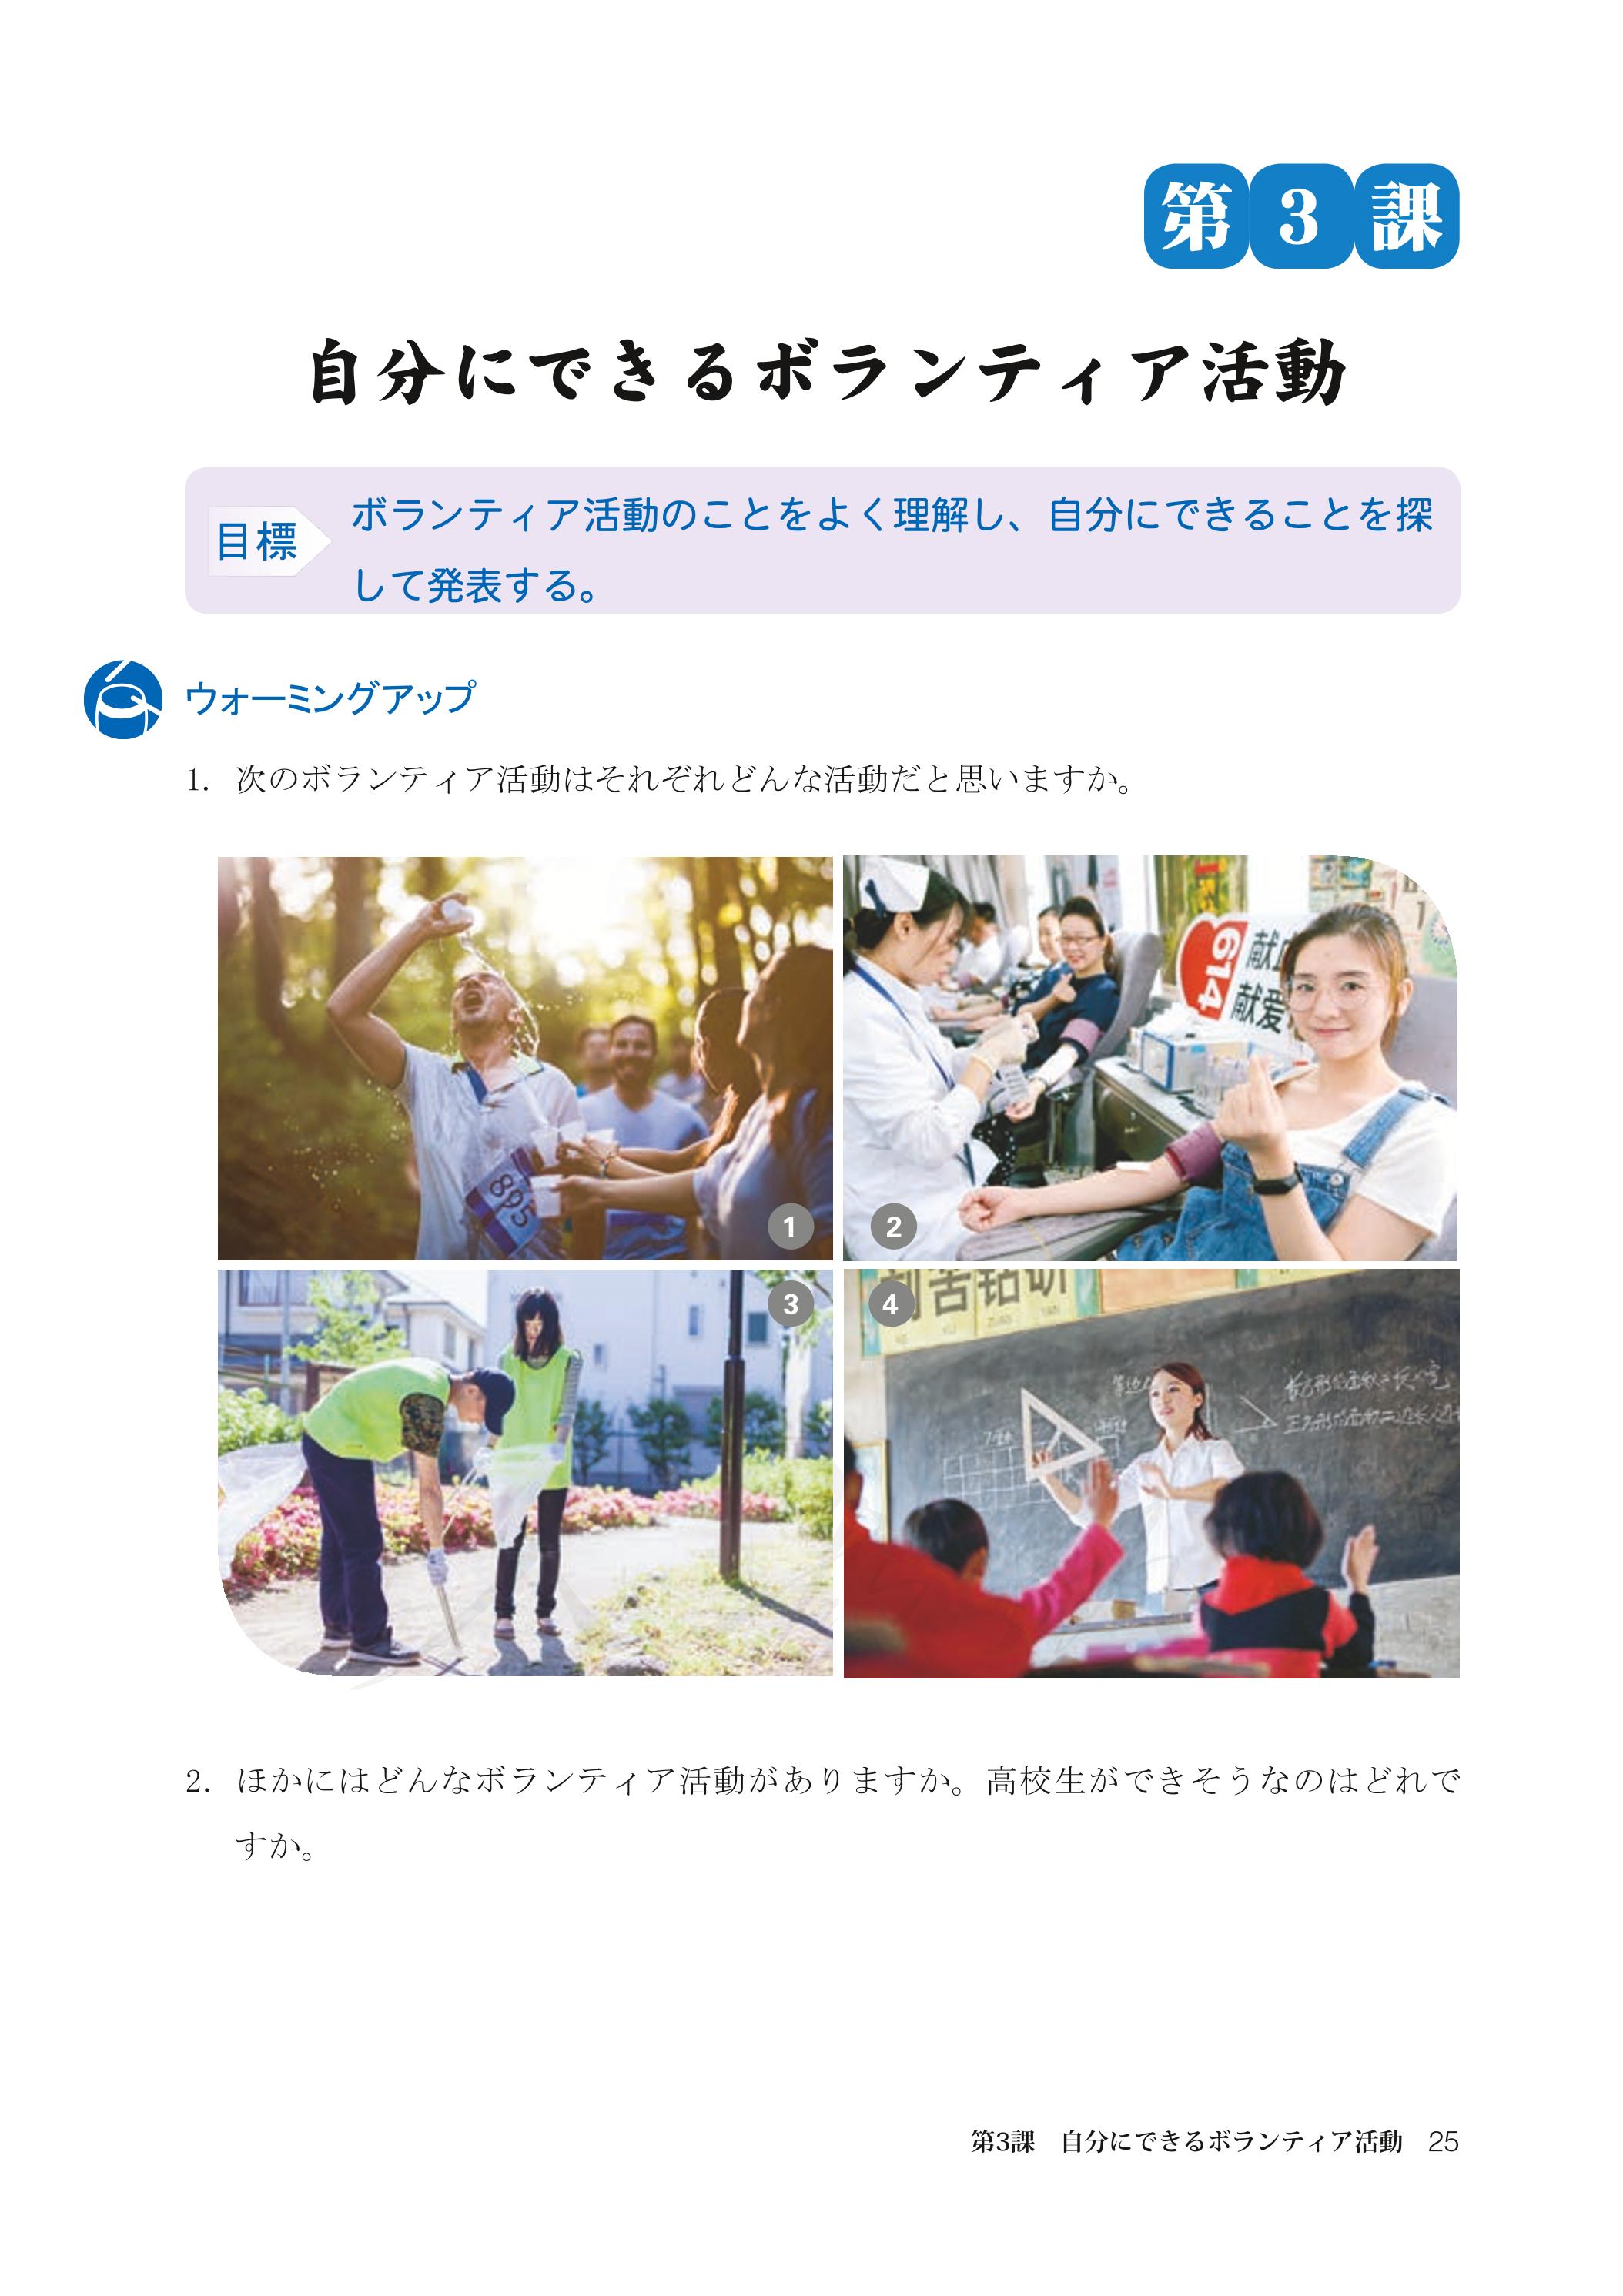 普通高中教科书·日语必修 第一册（人教版）PDF高清文档下载